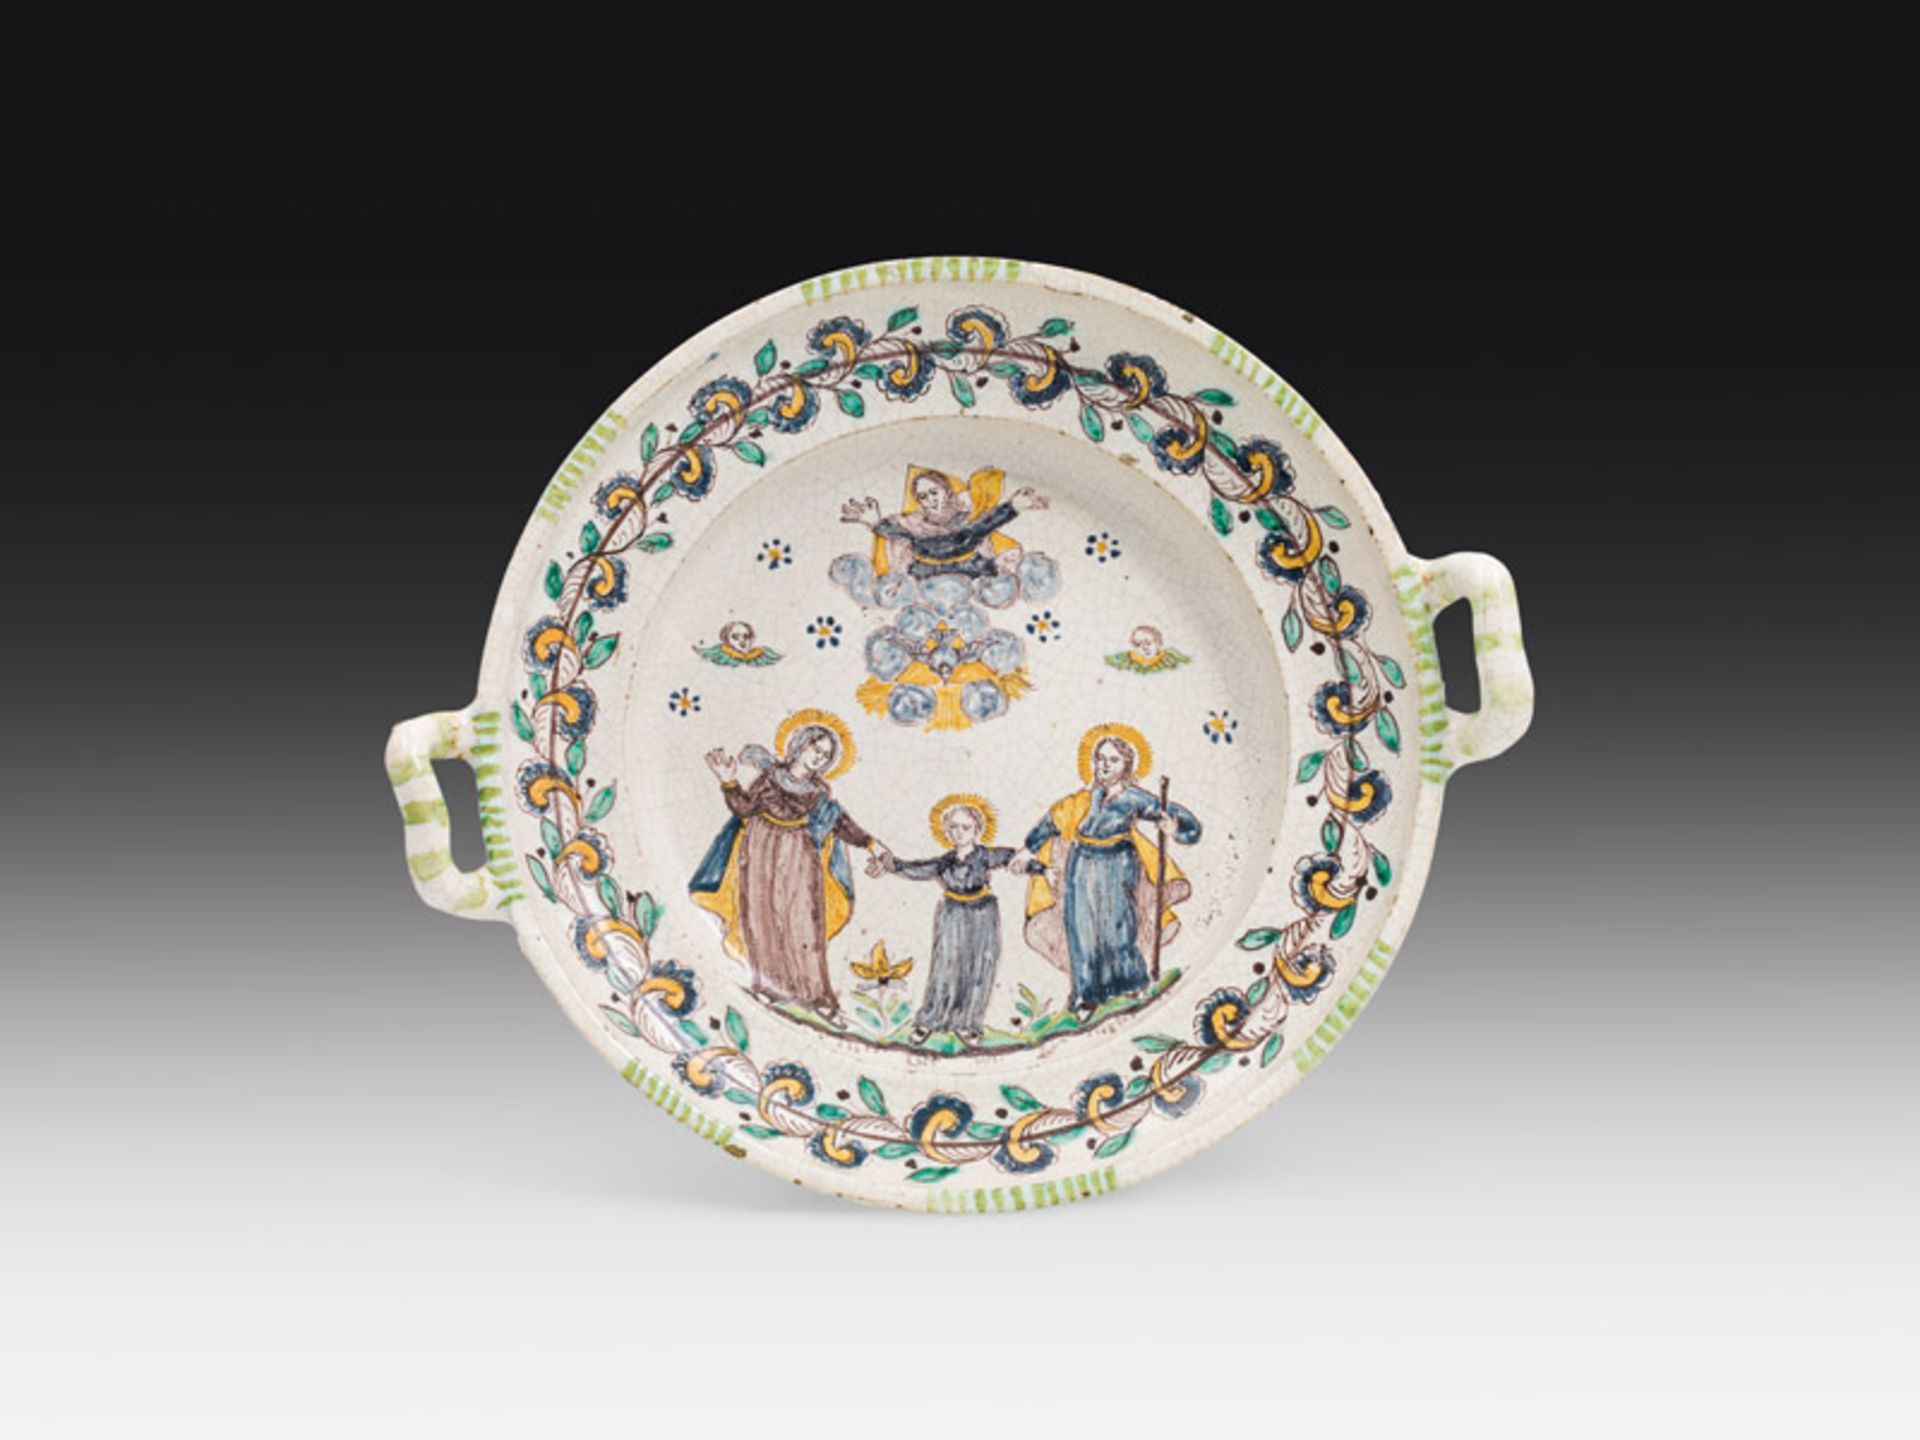 Plate "Holy Family", Gmunden, c. 1800